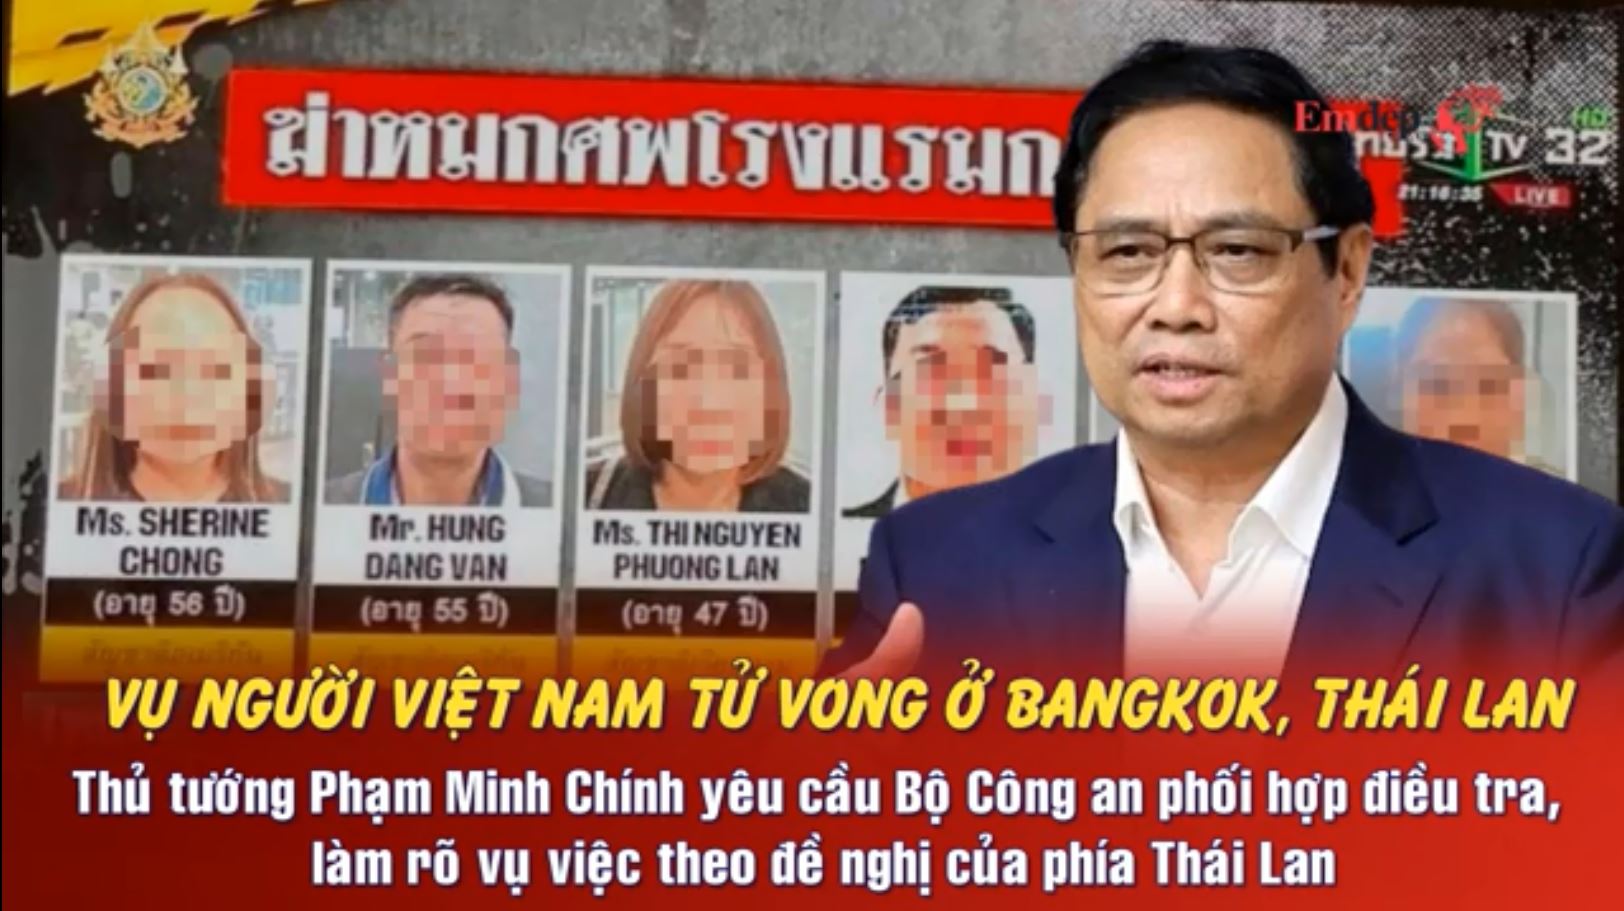 Vụ 6 người tử vong ở Thái Lan: Thủ tướng Phạm Minh Chính yêu cầu Bộ Công an phối hợp điều tra